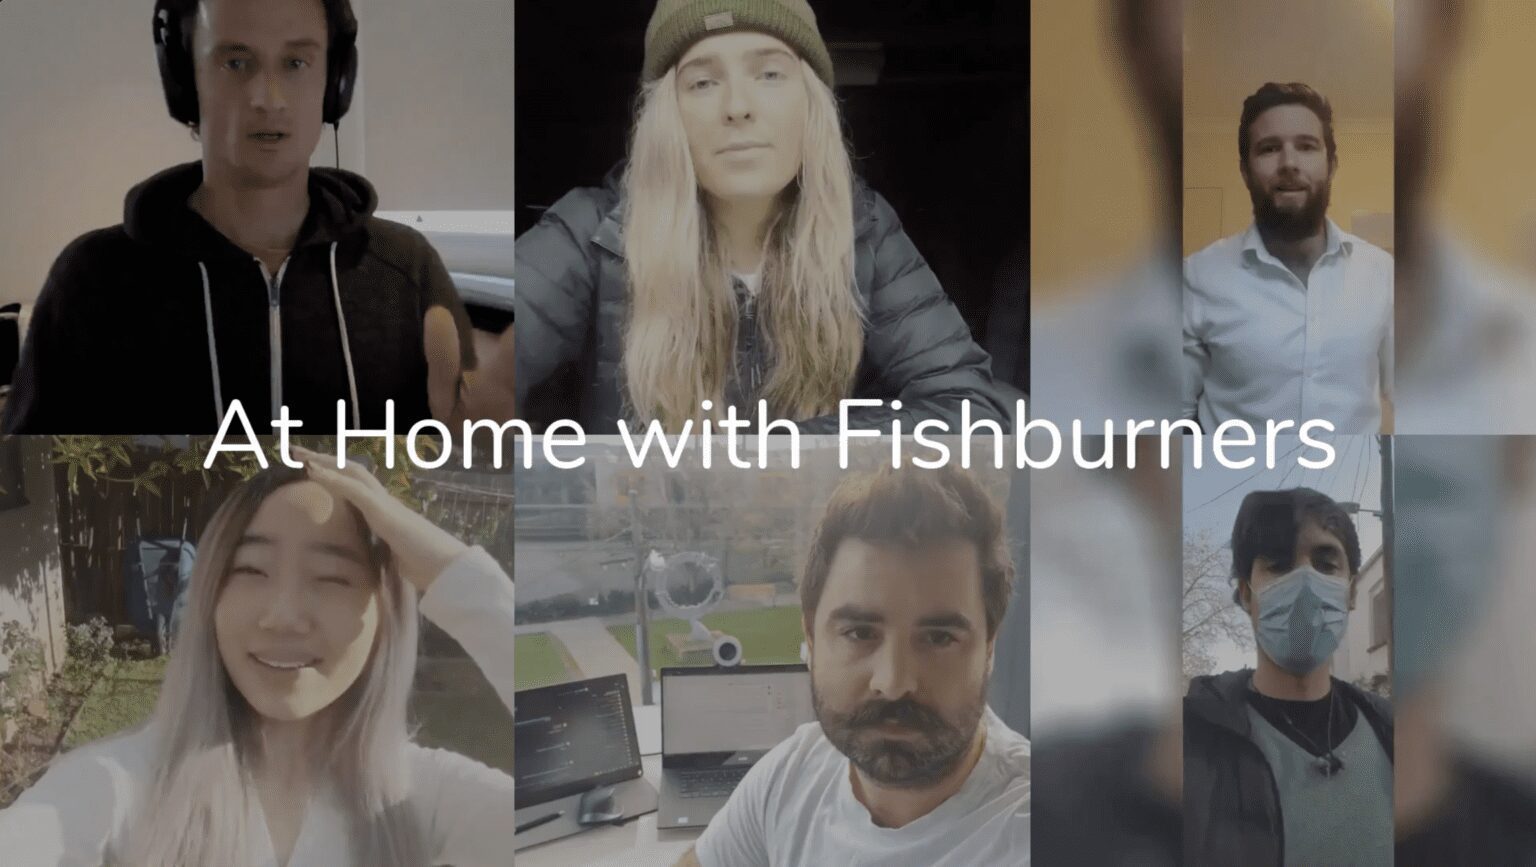 Fishburners community video thumbnail e1632706657823 1536x867 1